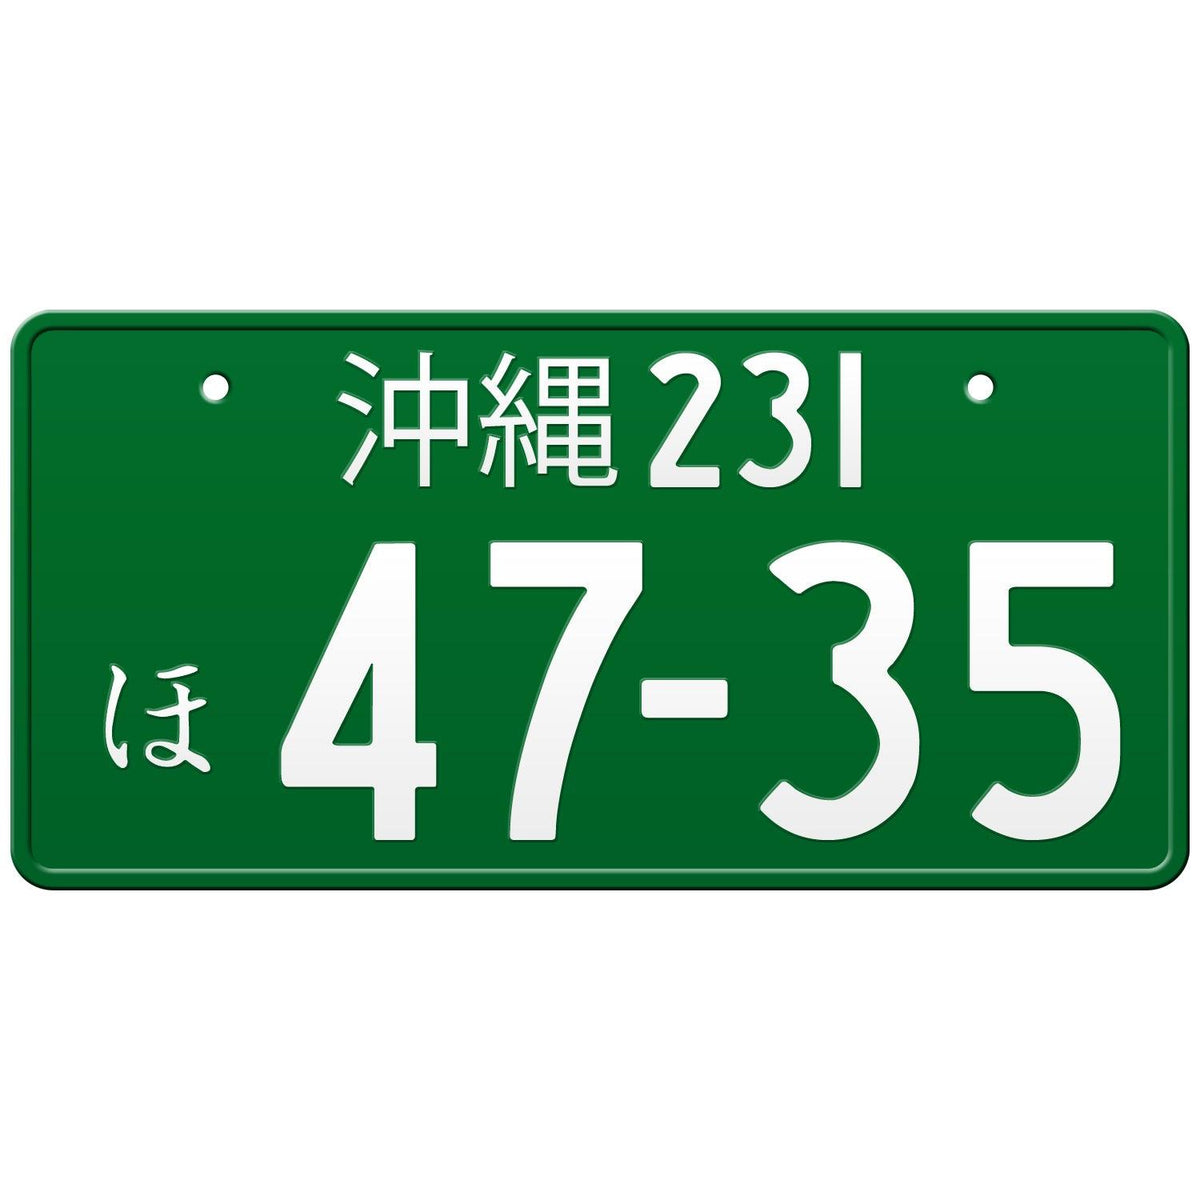 沖縄 Okinawa Japanese License Plate – Japan License Plate